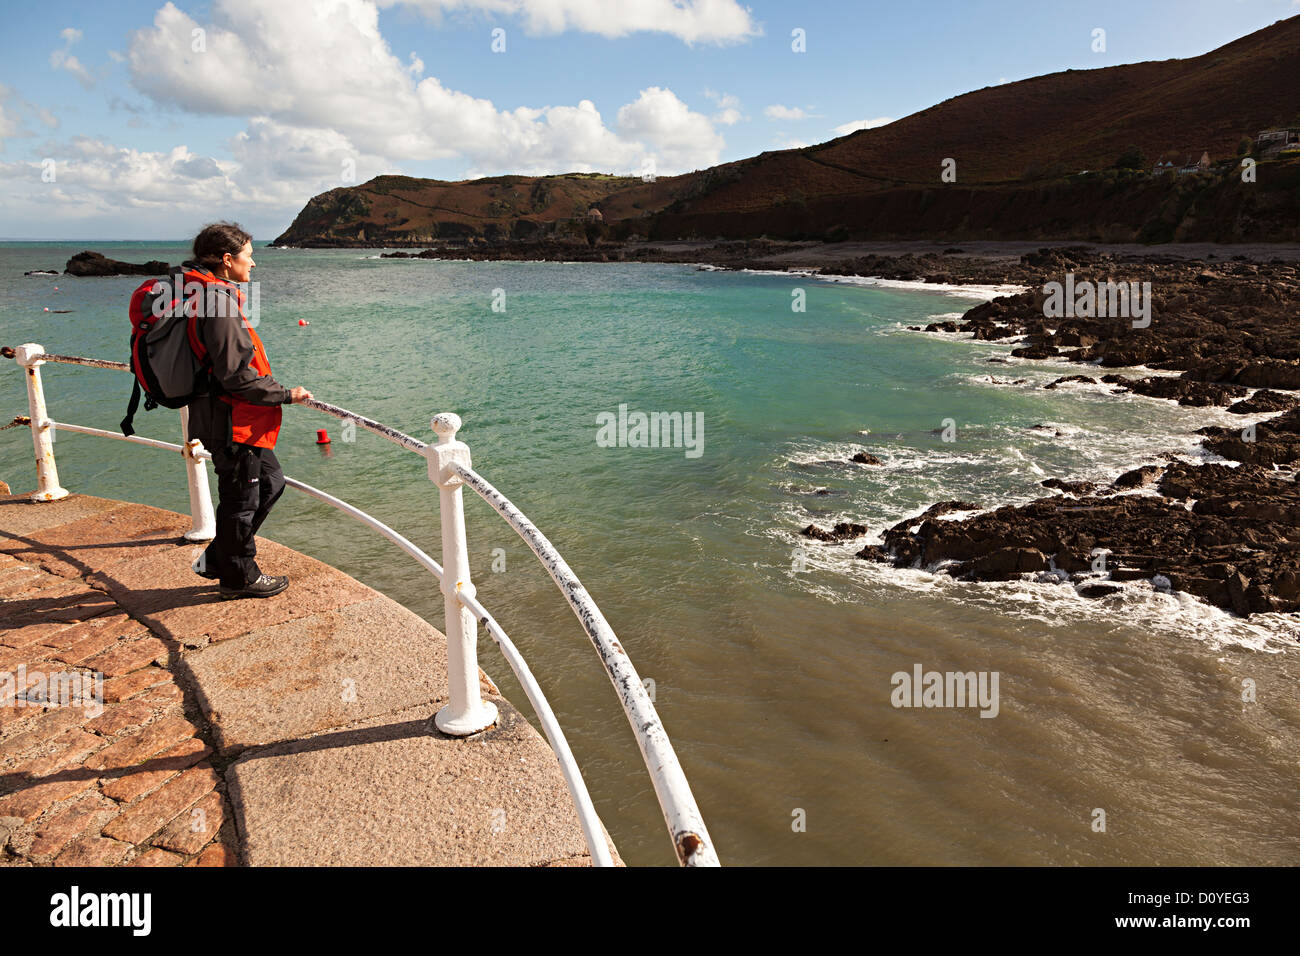 Persona in piedi sulla parete del porto guardando il mare, Bonne Nuit, Jersey costa del nord, Isole del Canale, REGNO UNITO Foto Stock